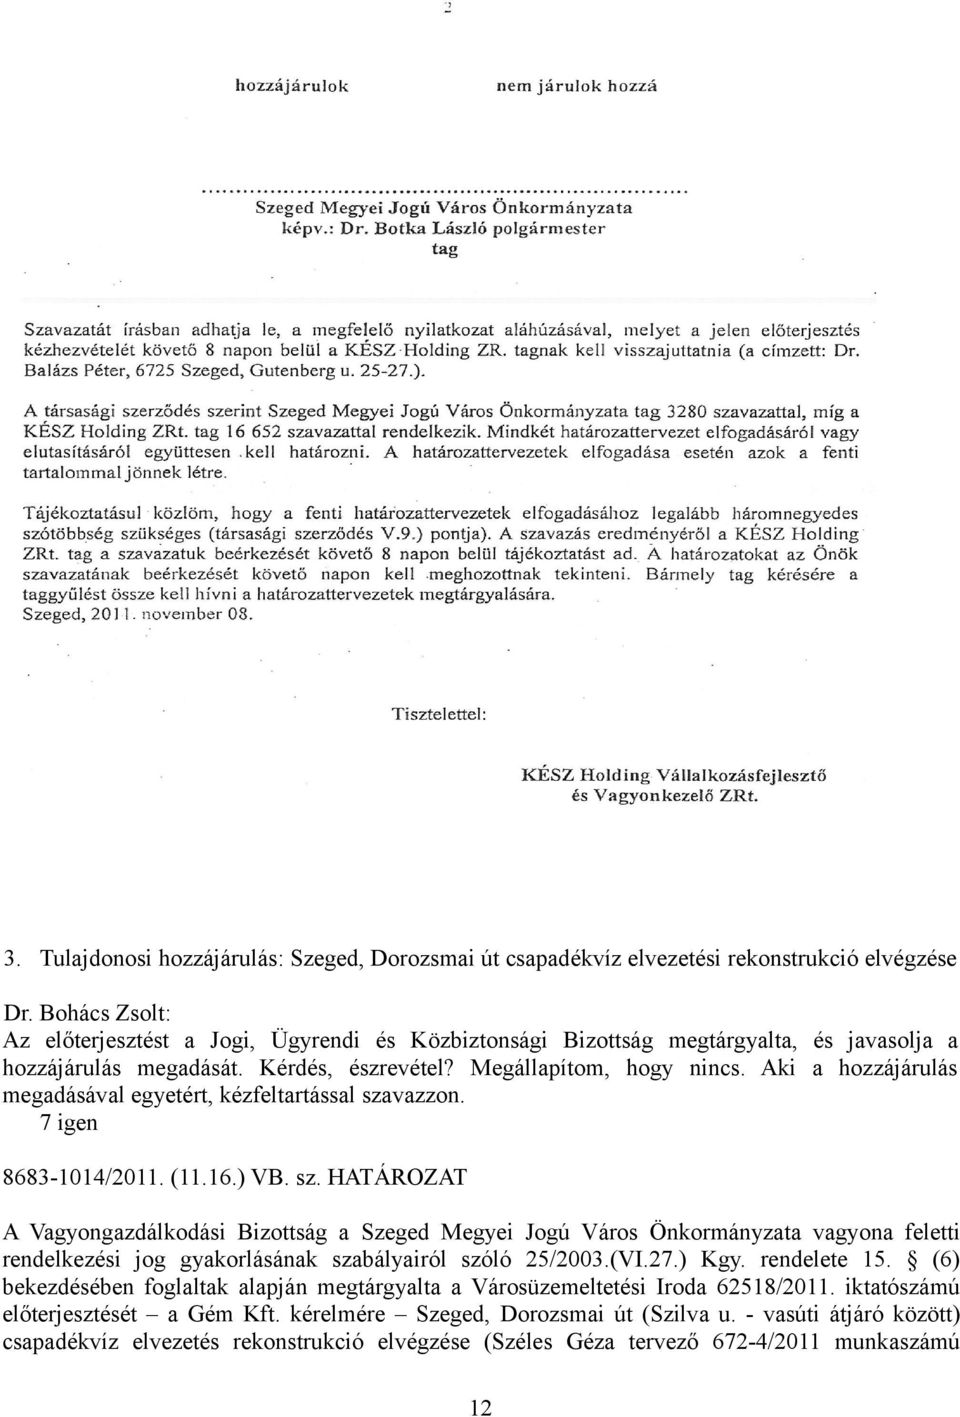 vazzon. 8683-1014/2011. (11.16.) VB. sz. HATÁROZAT A Vagyongazdálkodási Bizottság a Szeged Megyei Jogú Város Önkormányzata vagyona feletti rendelkezési jog gyakorlásának szabályairól szóló 25/2003.